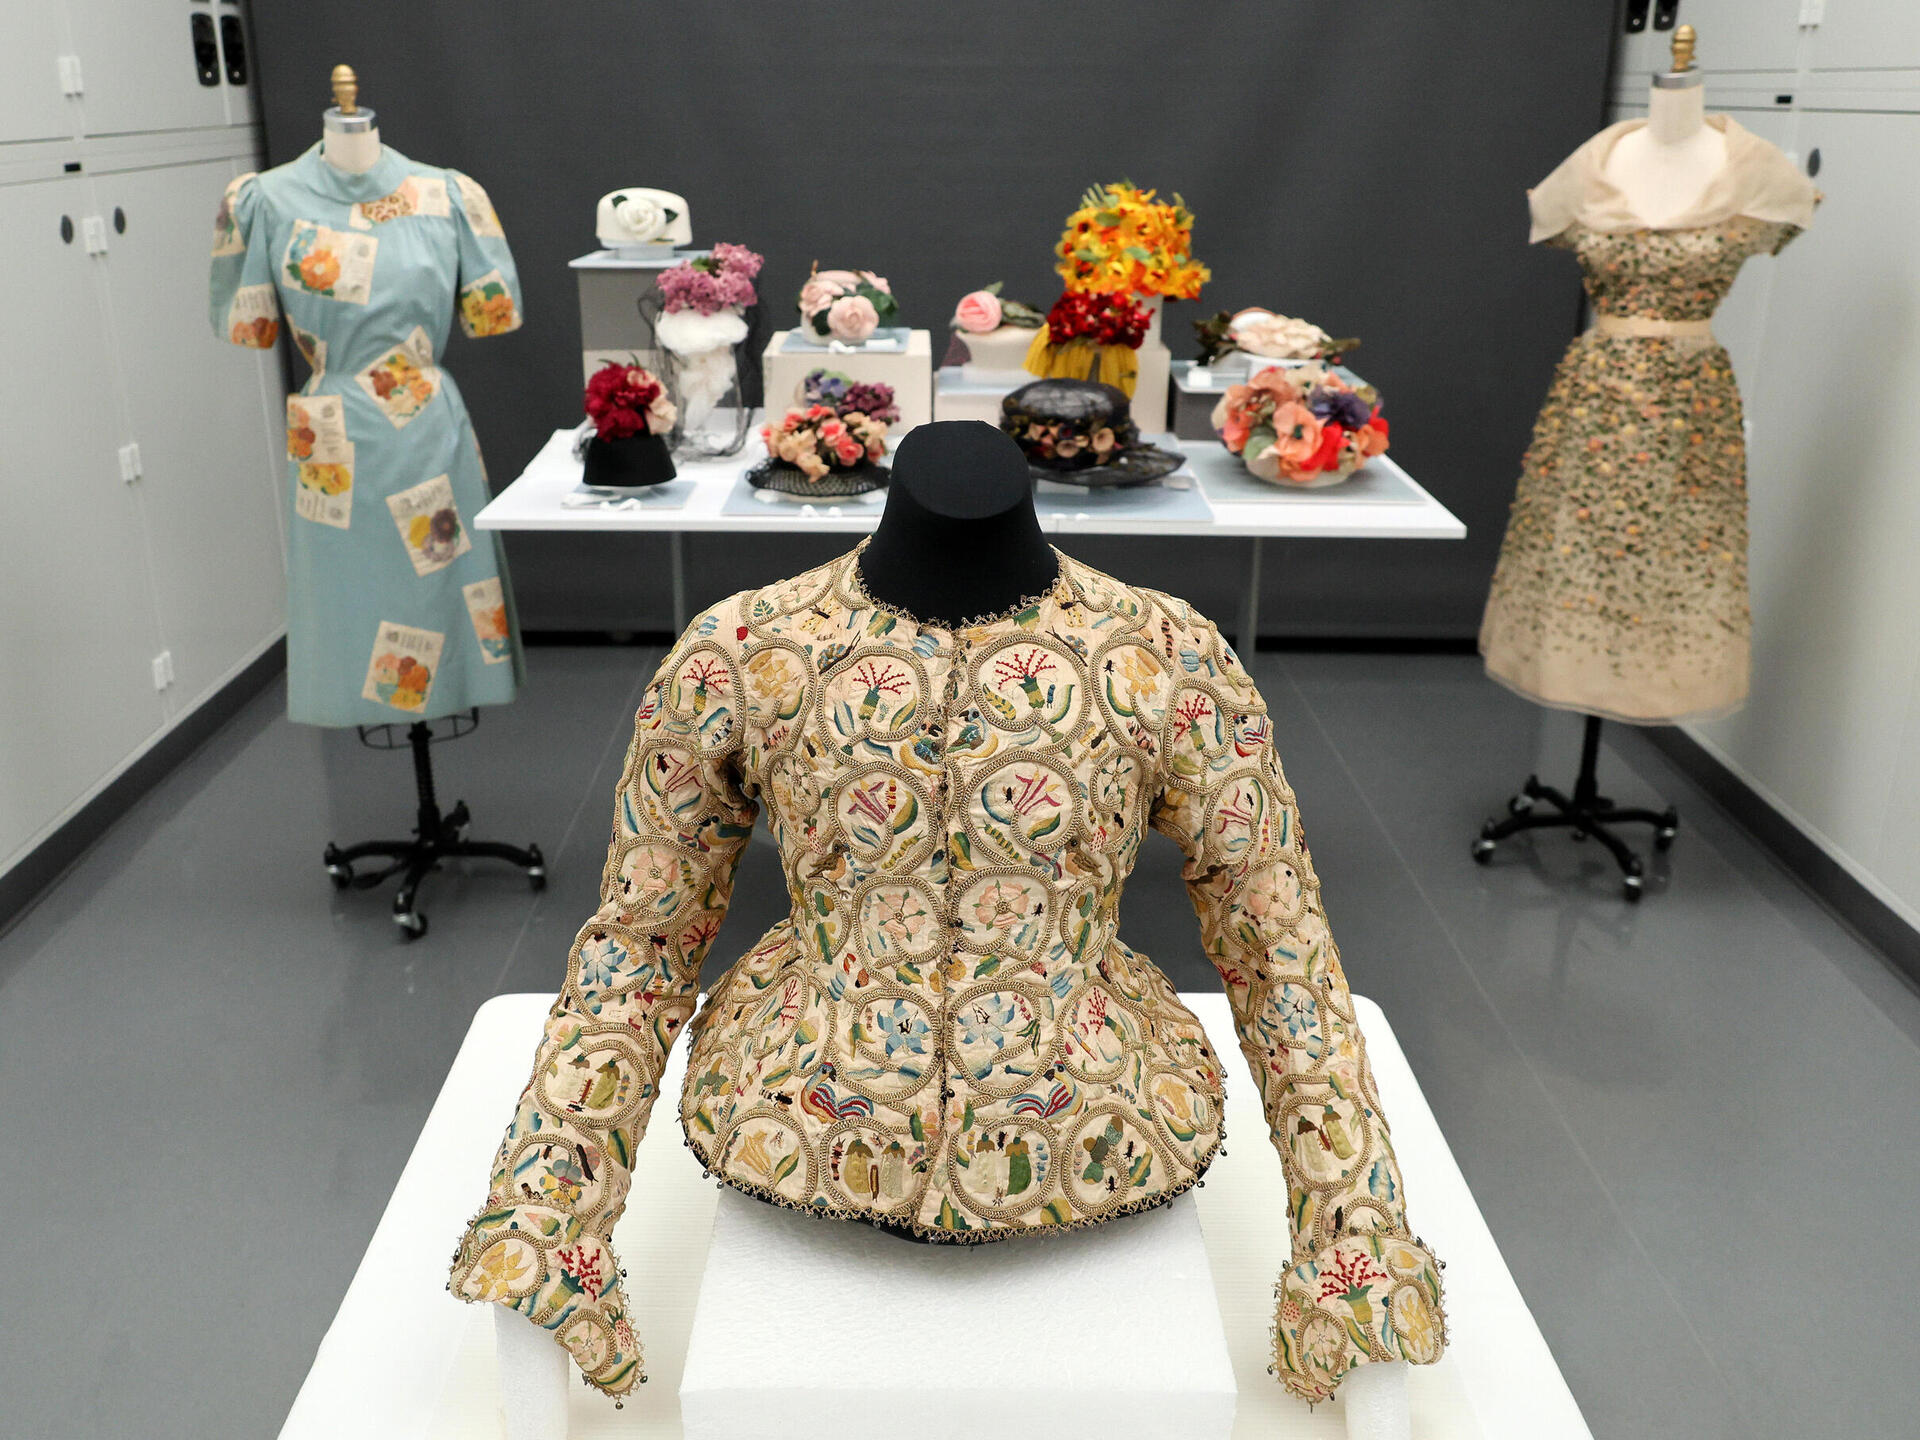 עיצובי אופנה בהכרזה על תערוכת האופנה "יפהפיות נרדמות" של מוזיאון המטרופוליטן